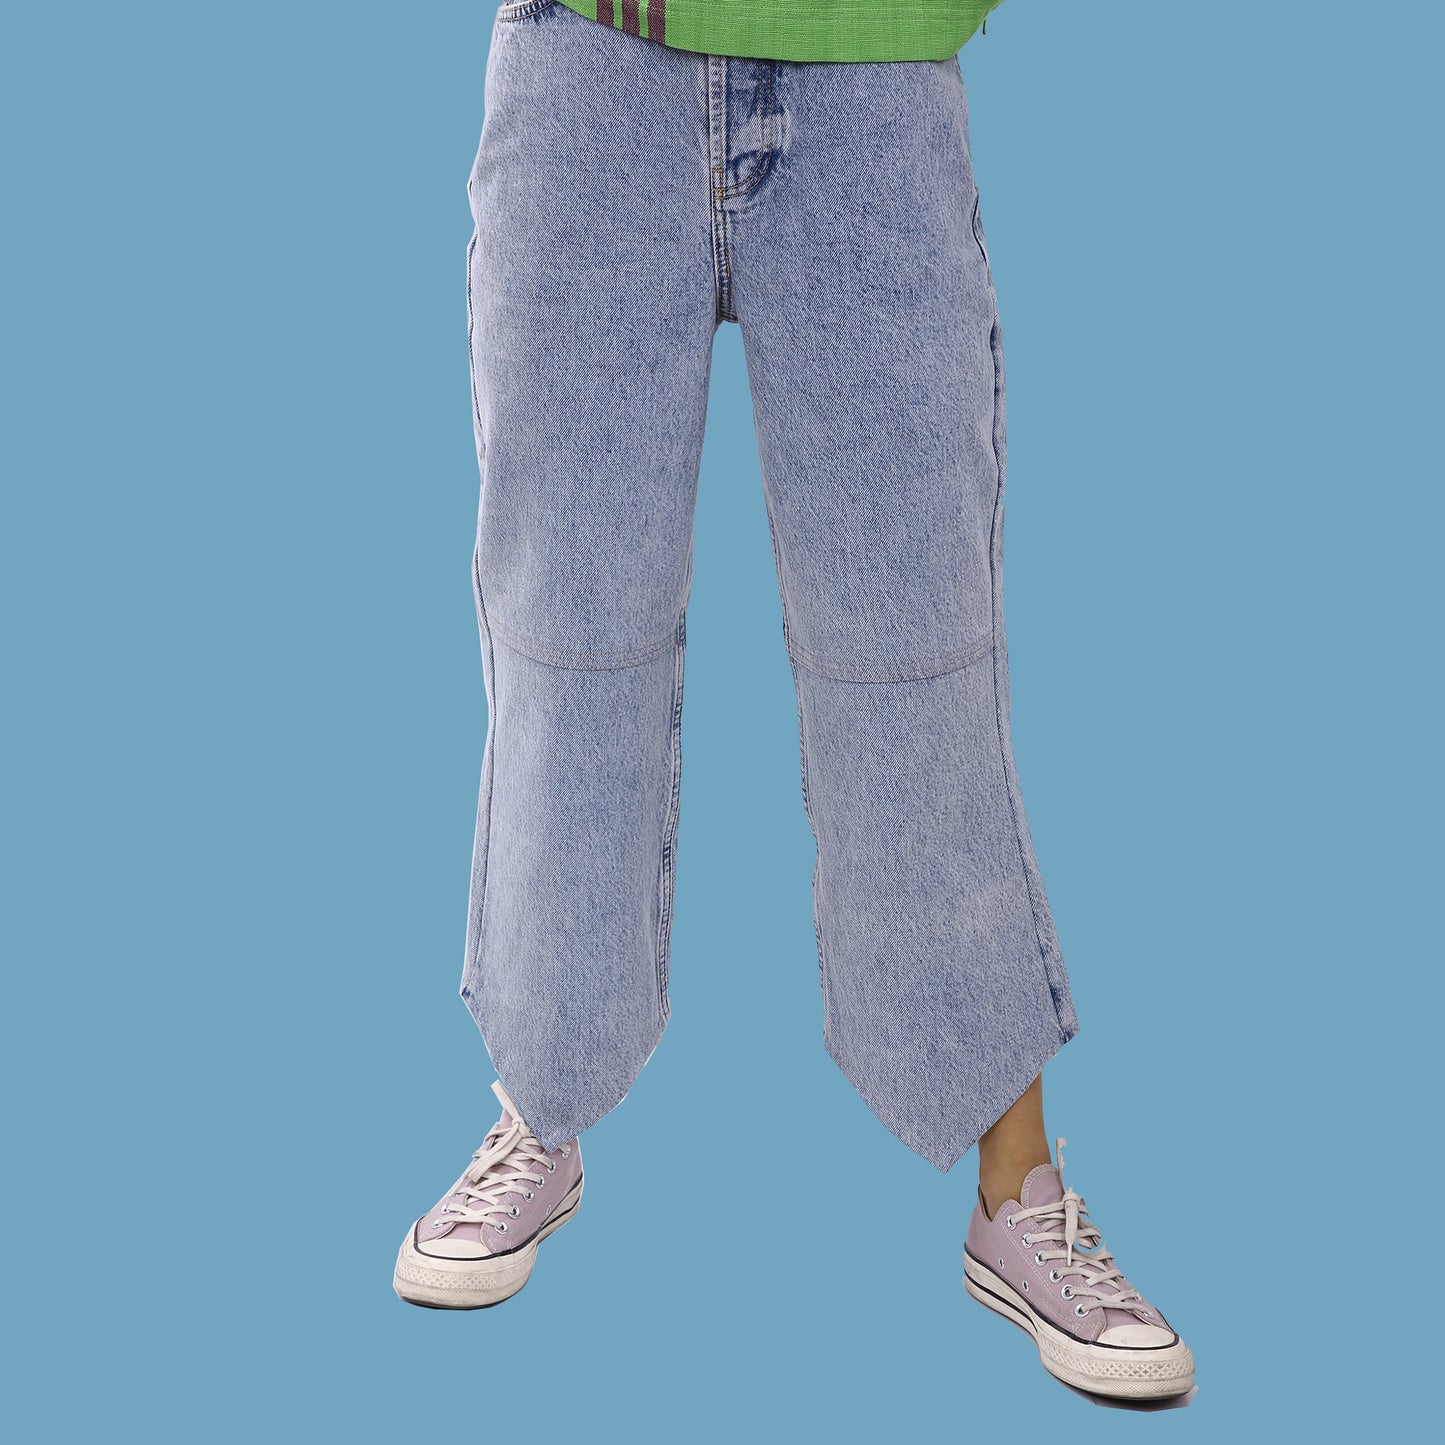 Bandana Jeans with Green back-pockets